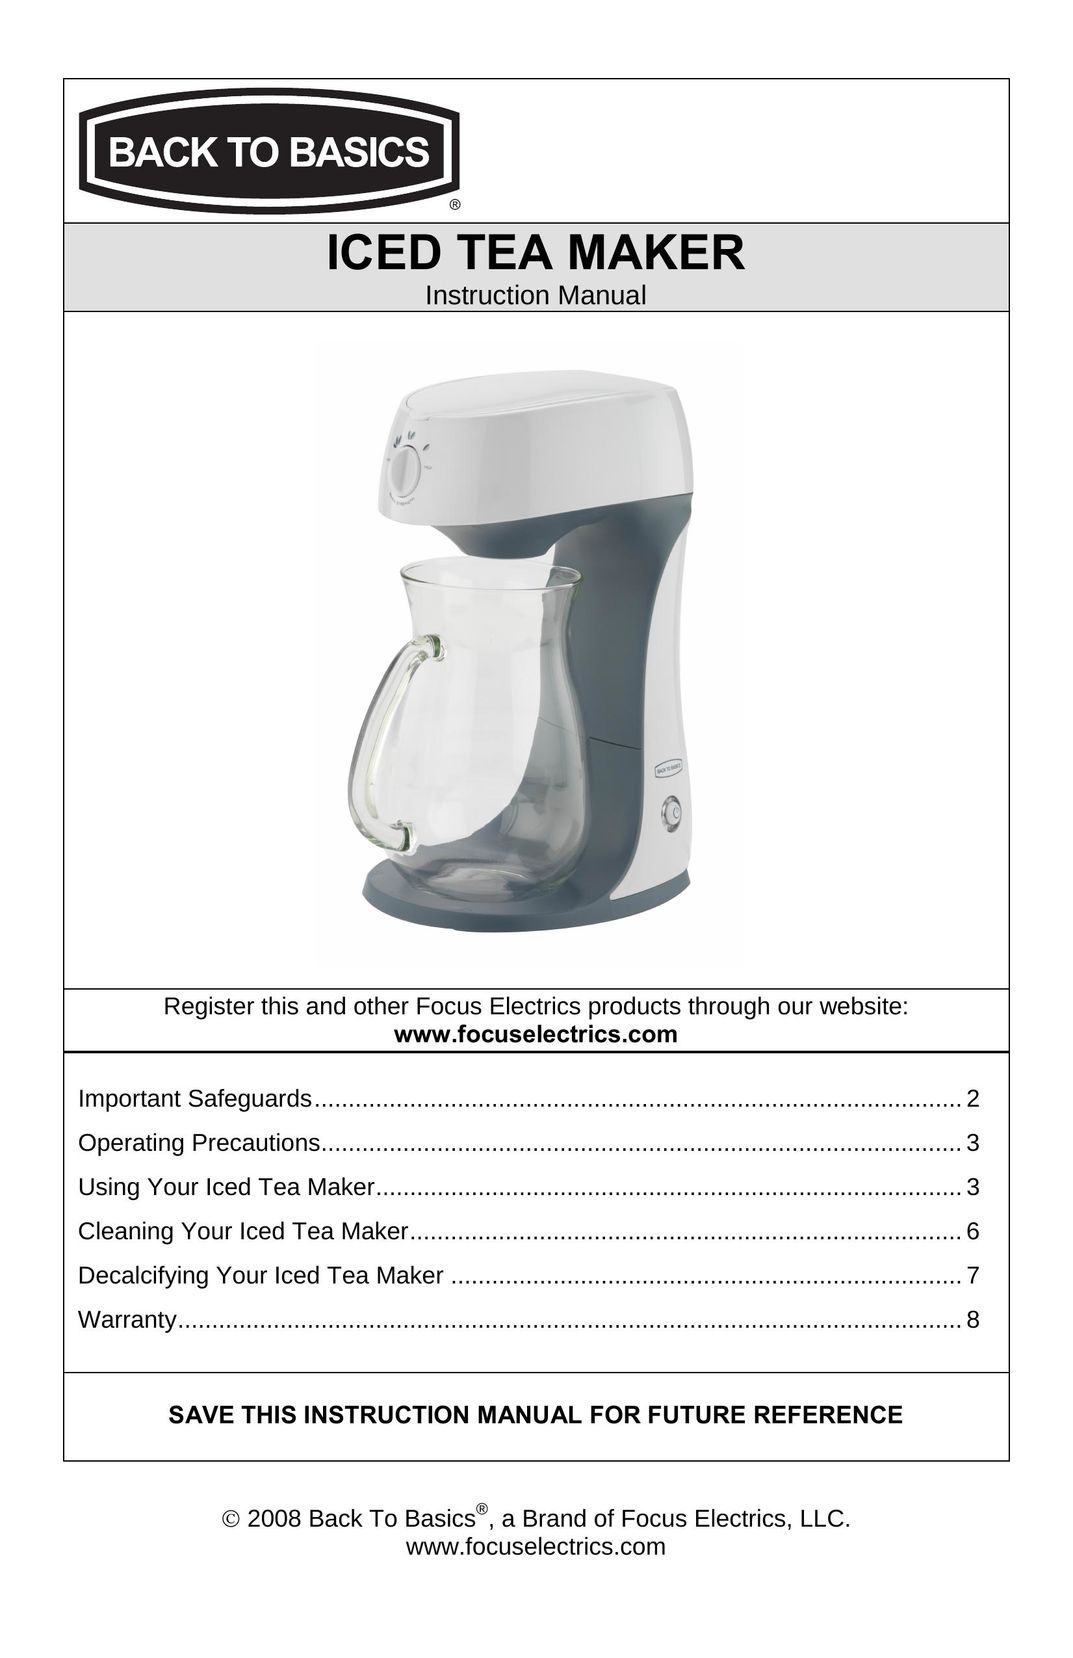 West Bend Back to Basics Ice Tea Maker Ice Tea Maker User Manual